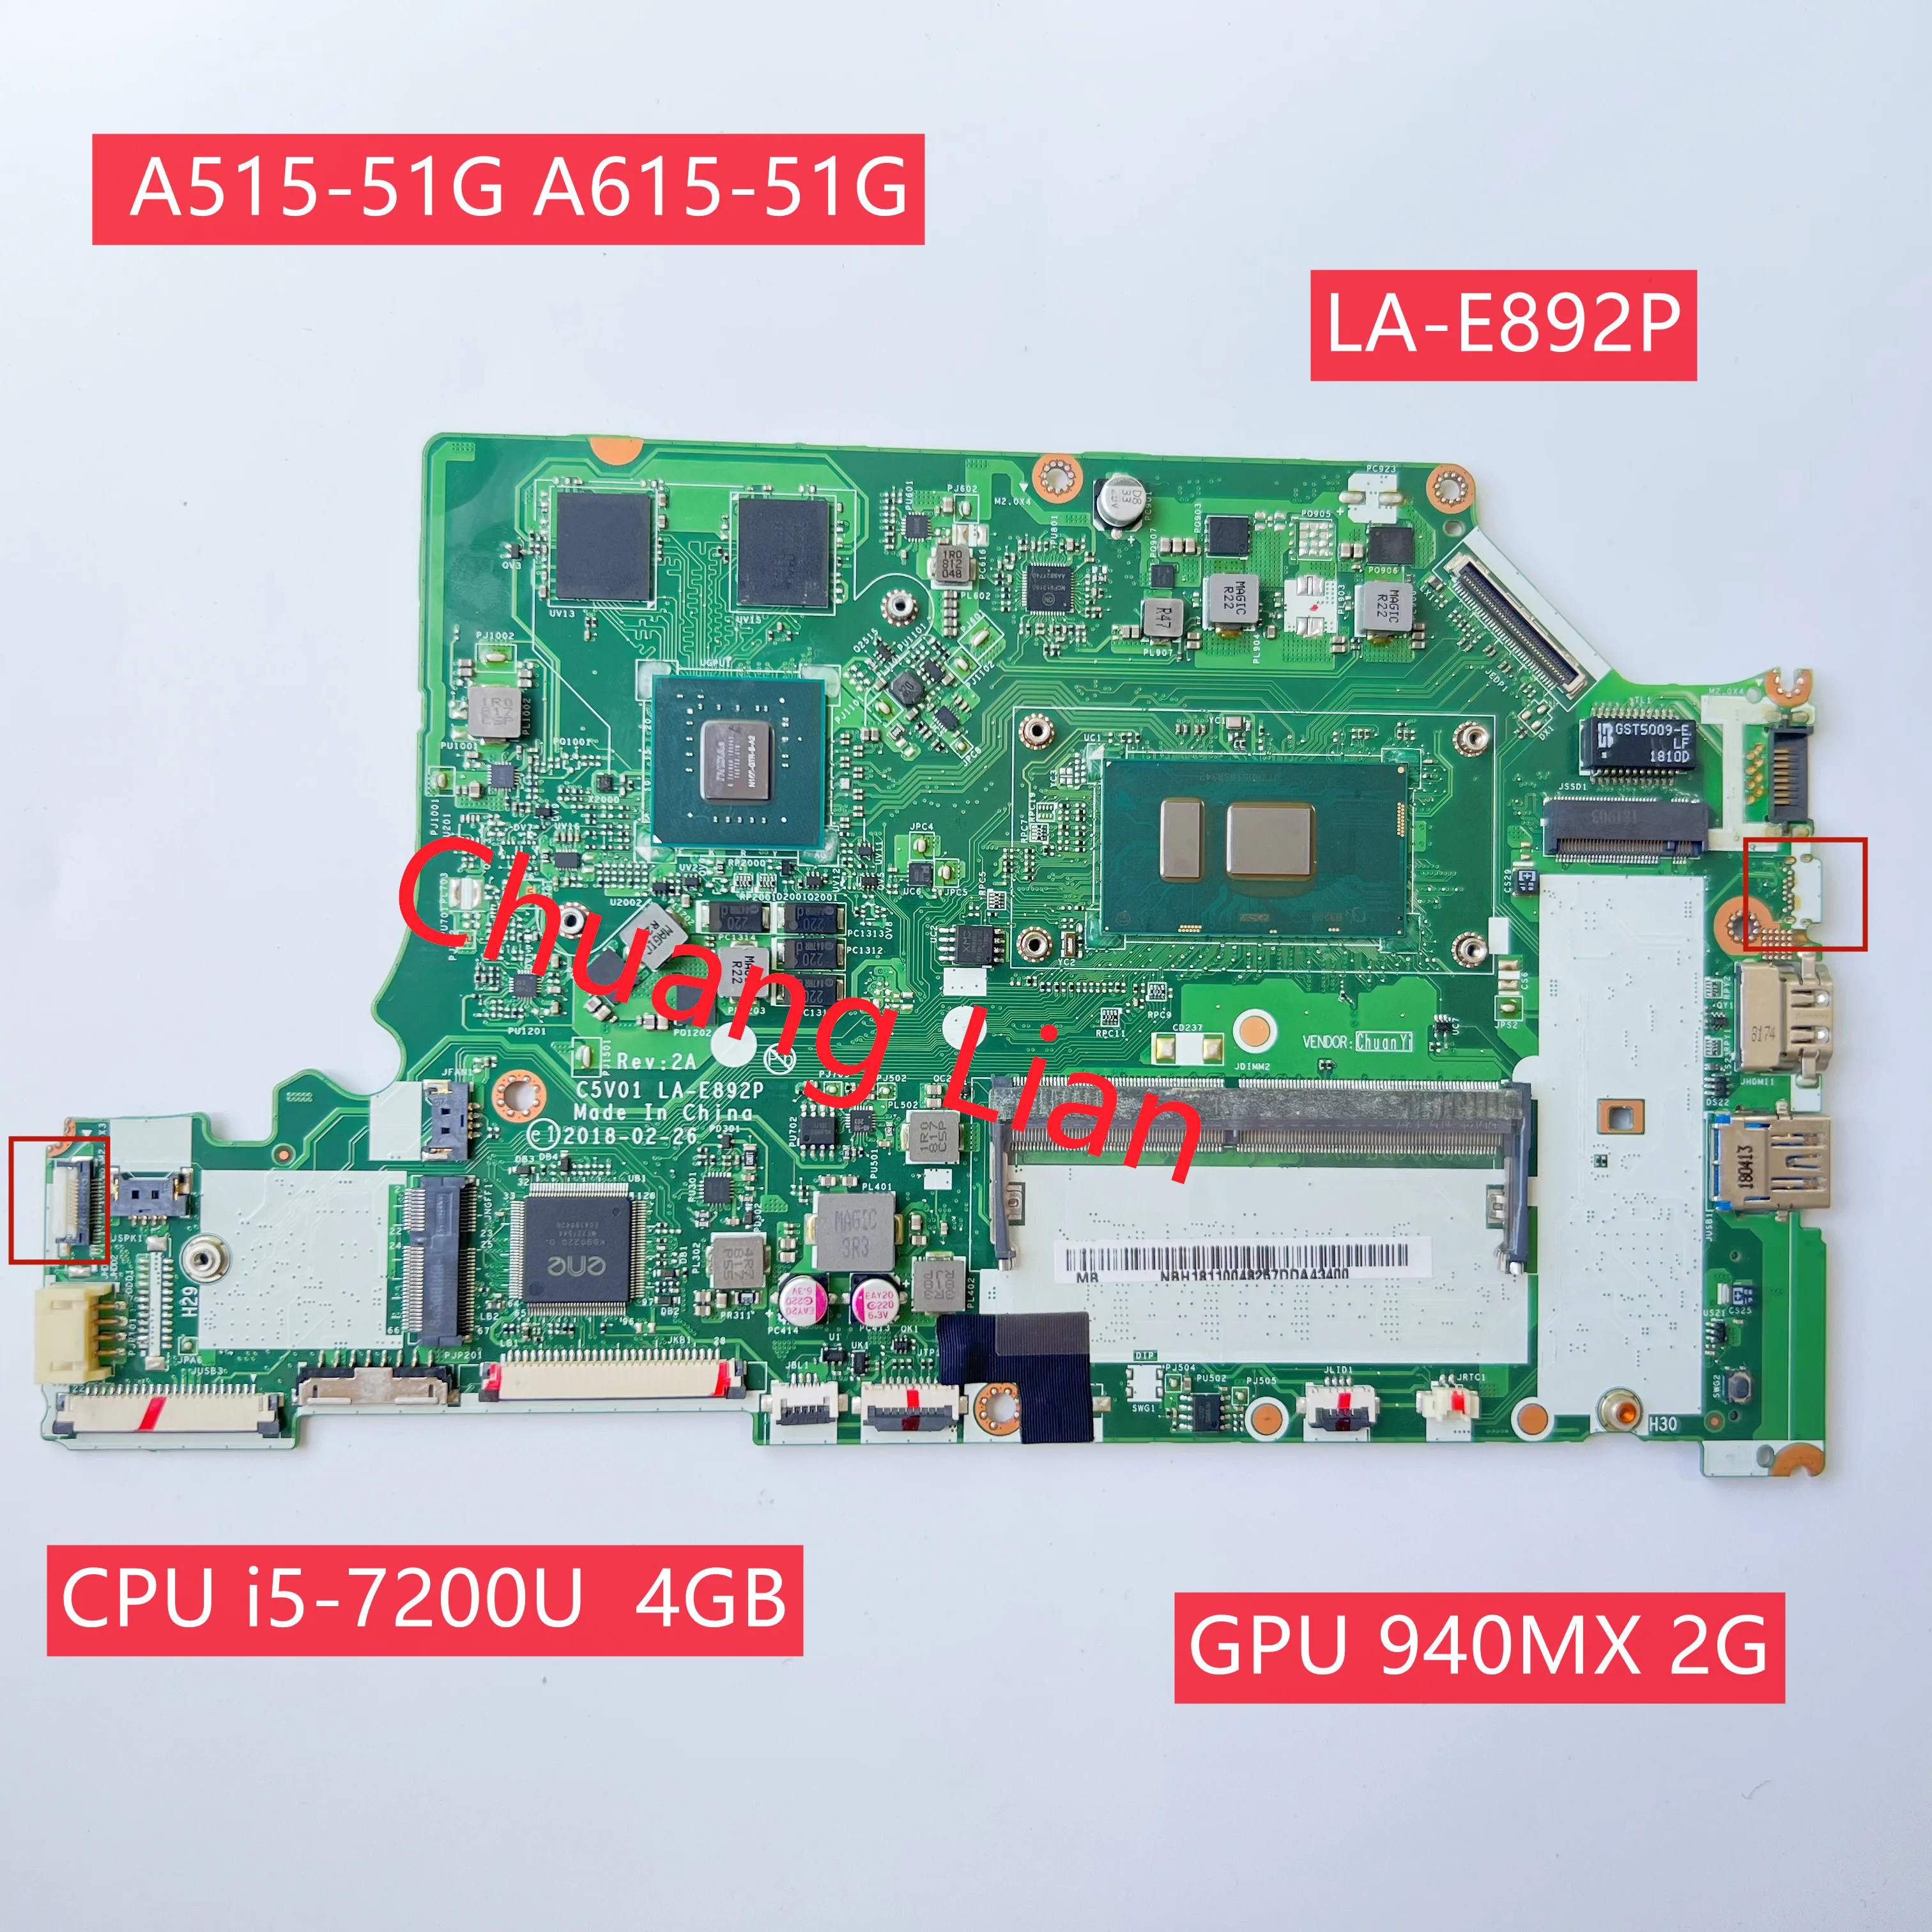 LA-E892P For Acer Aspire N17C4 A515-51G A615-51G A315-53G Laptop Motherboard  With CPU i5-7200U 4G-RAM GPU N16s-GTR-S-A2  2GB